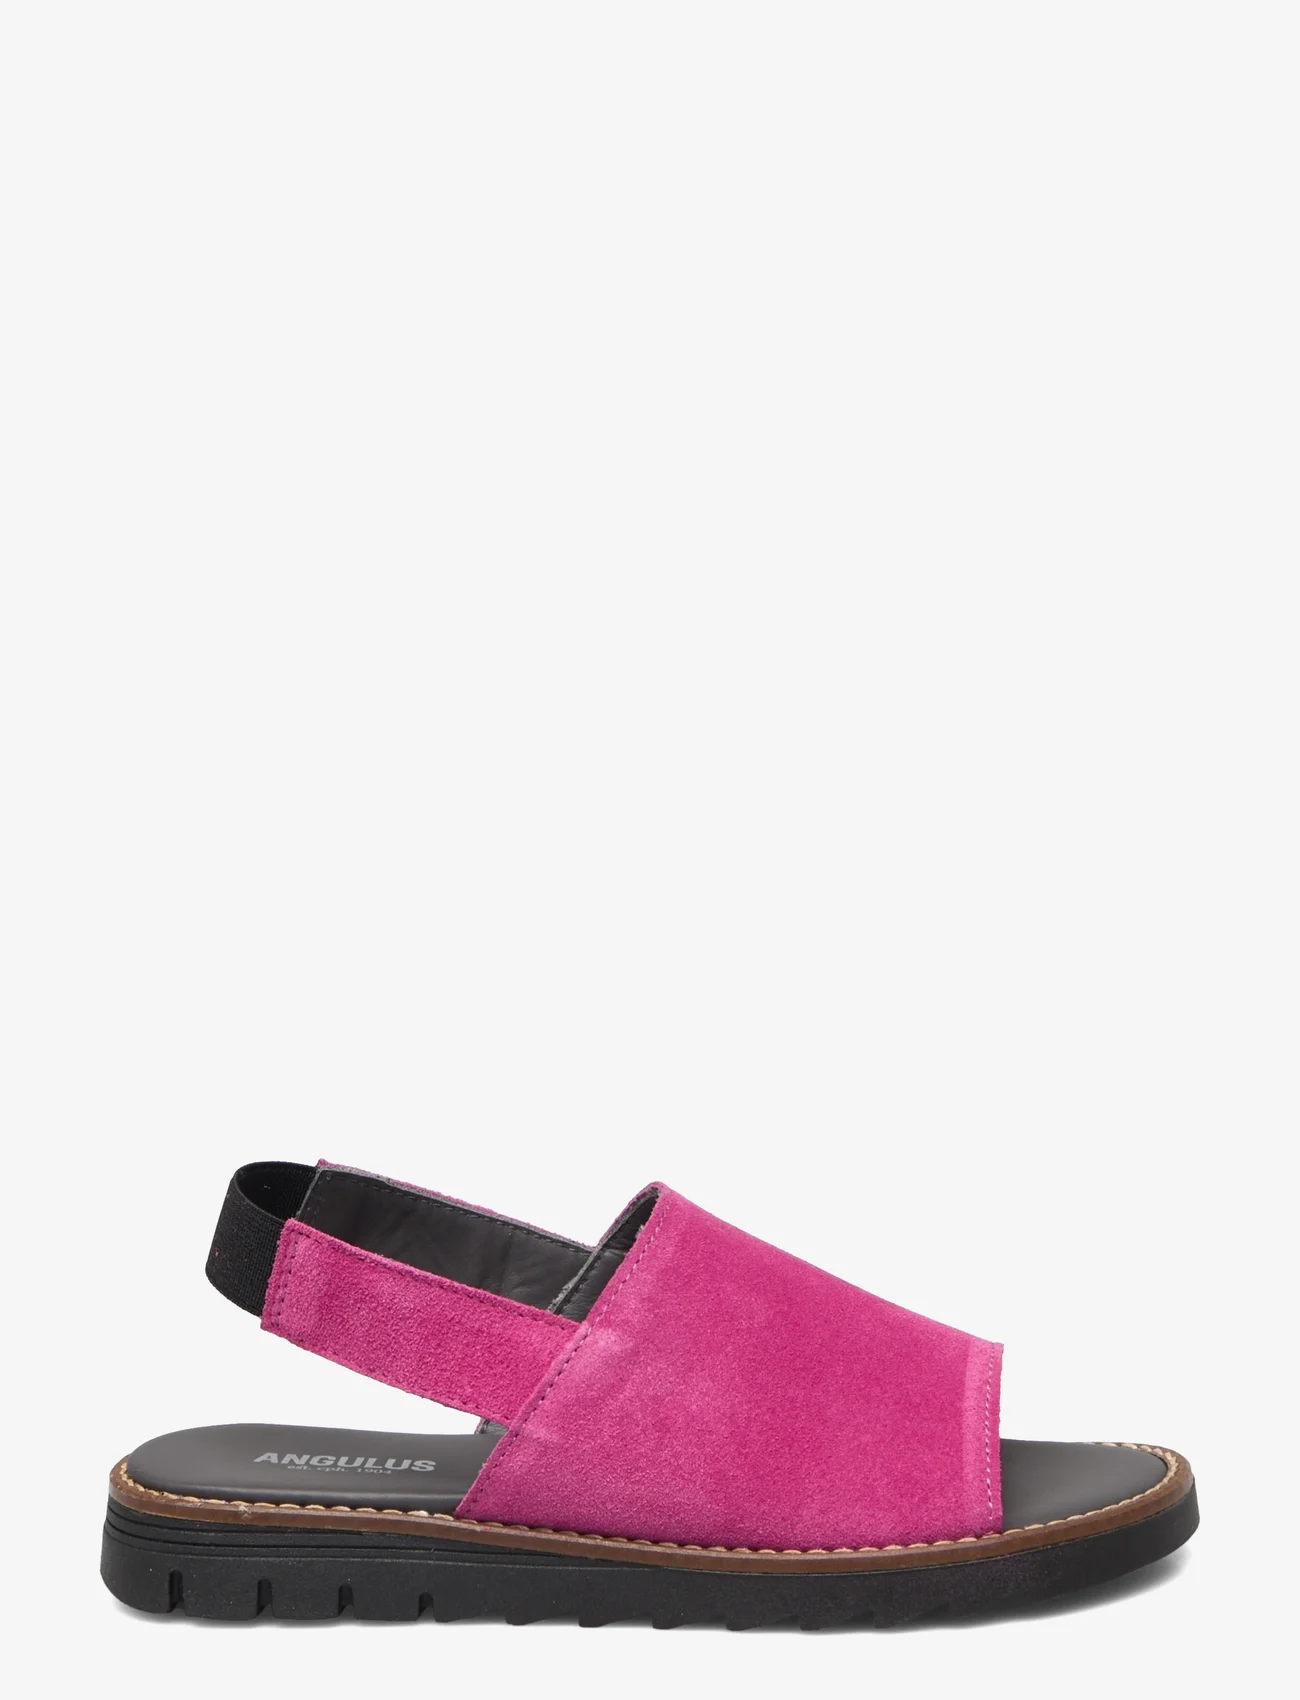 ANGULUS - Sandals - flat - open toe - op - summer savings - 1150 pink - 1